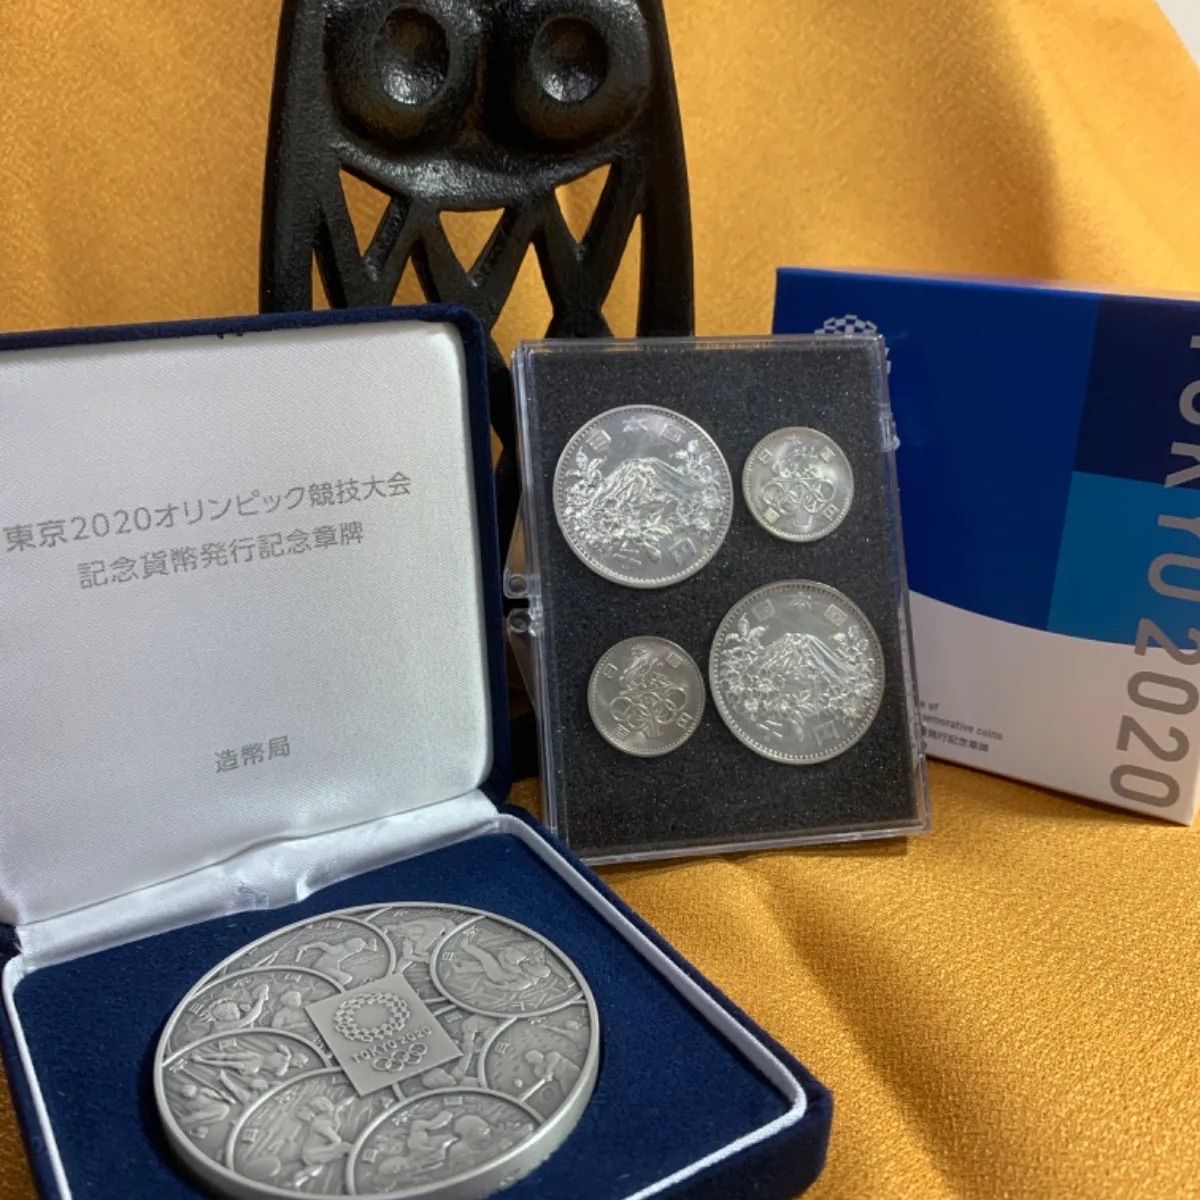 東京2020オリンピック競技大会記念貨幣発行記念章 - 旧貨幣/金貨/銀貨